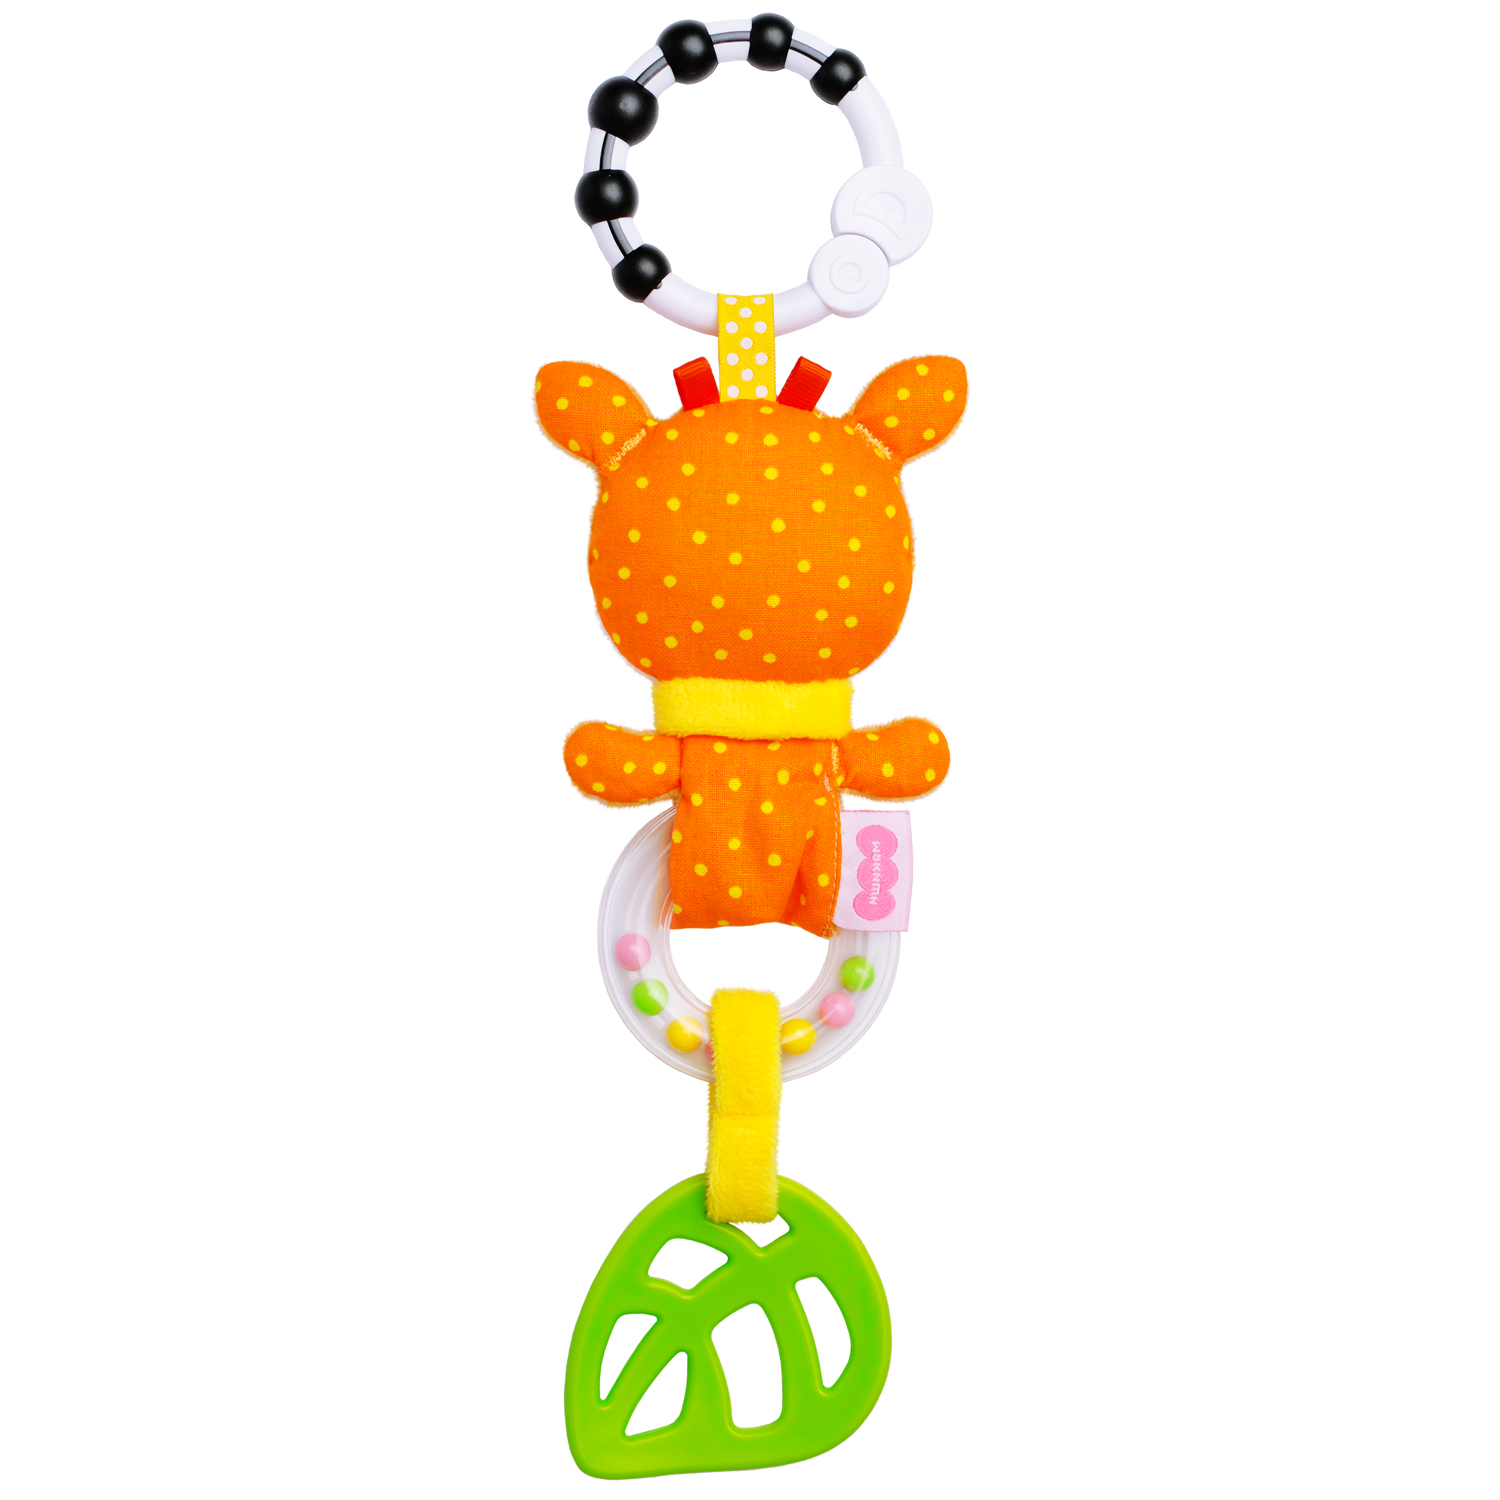 Игрушка подвеска Мякиши развивающая погремушка Оленёнок Бемби для новорождённого грызунок подарок - фото 9